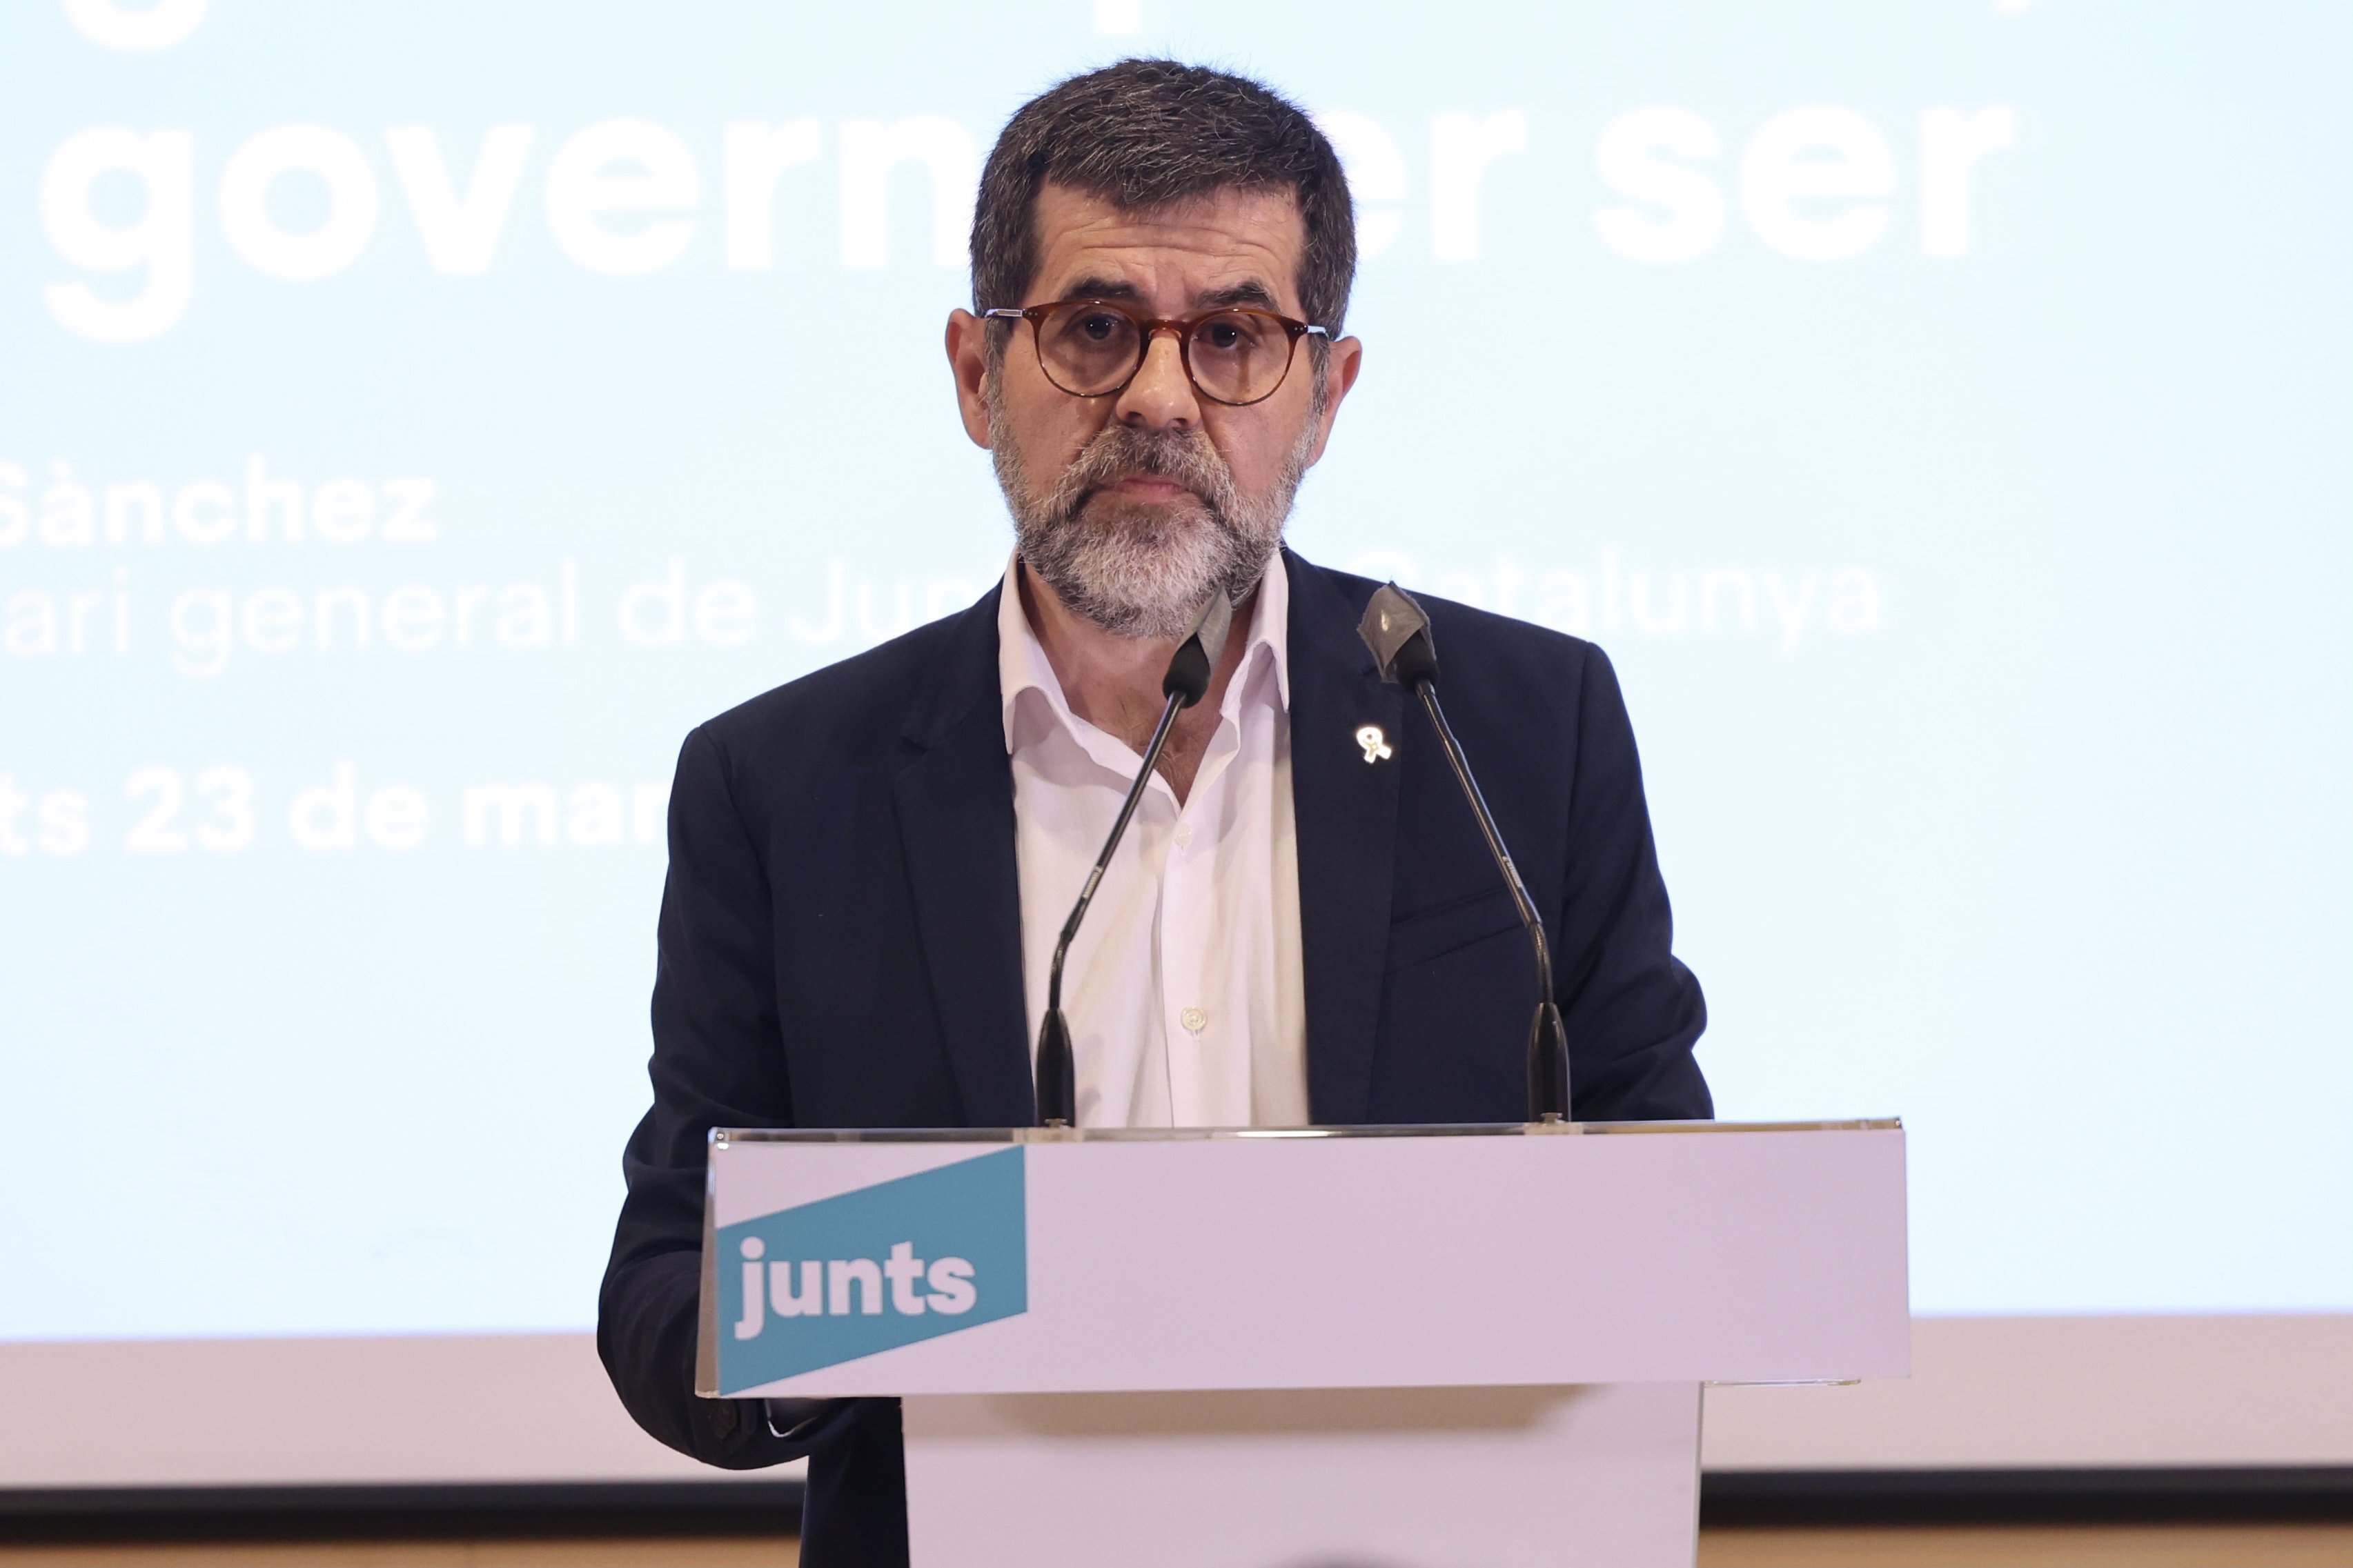 El porrazo de Cs en Madrid, según Jordi Sànchez: "Justicia poética"